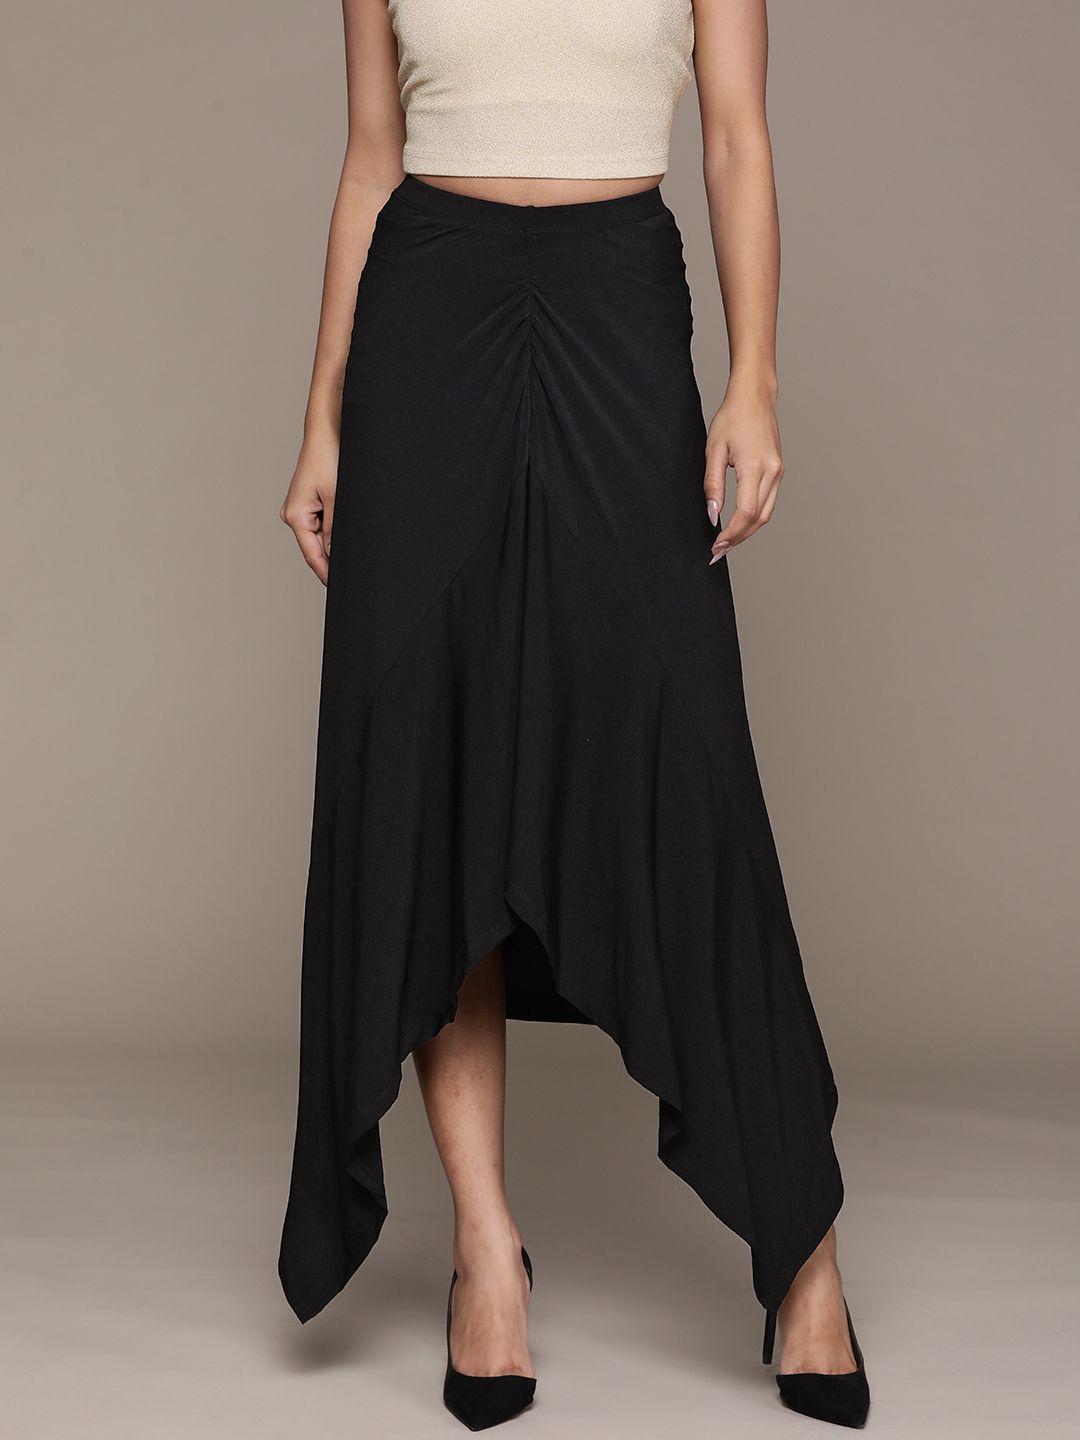 label ritu kumar women solid a-line maxi skirt